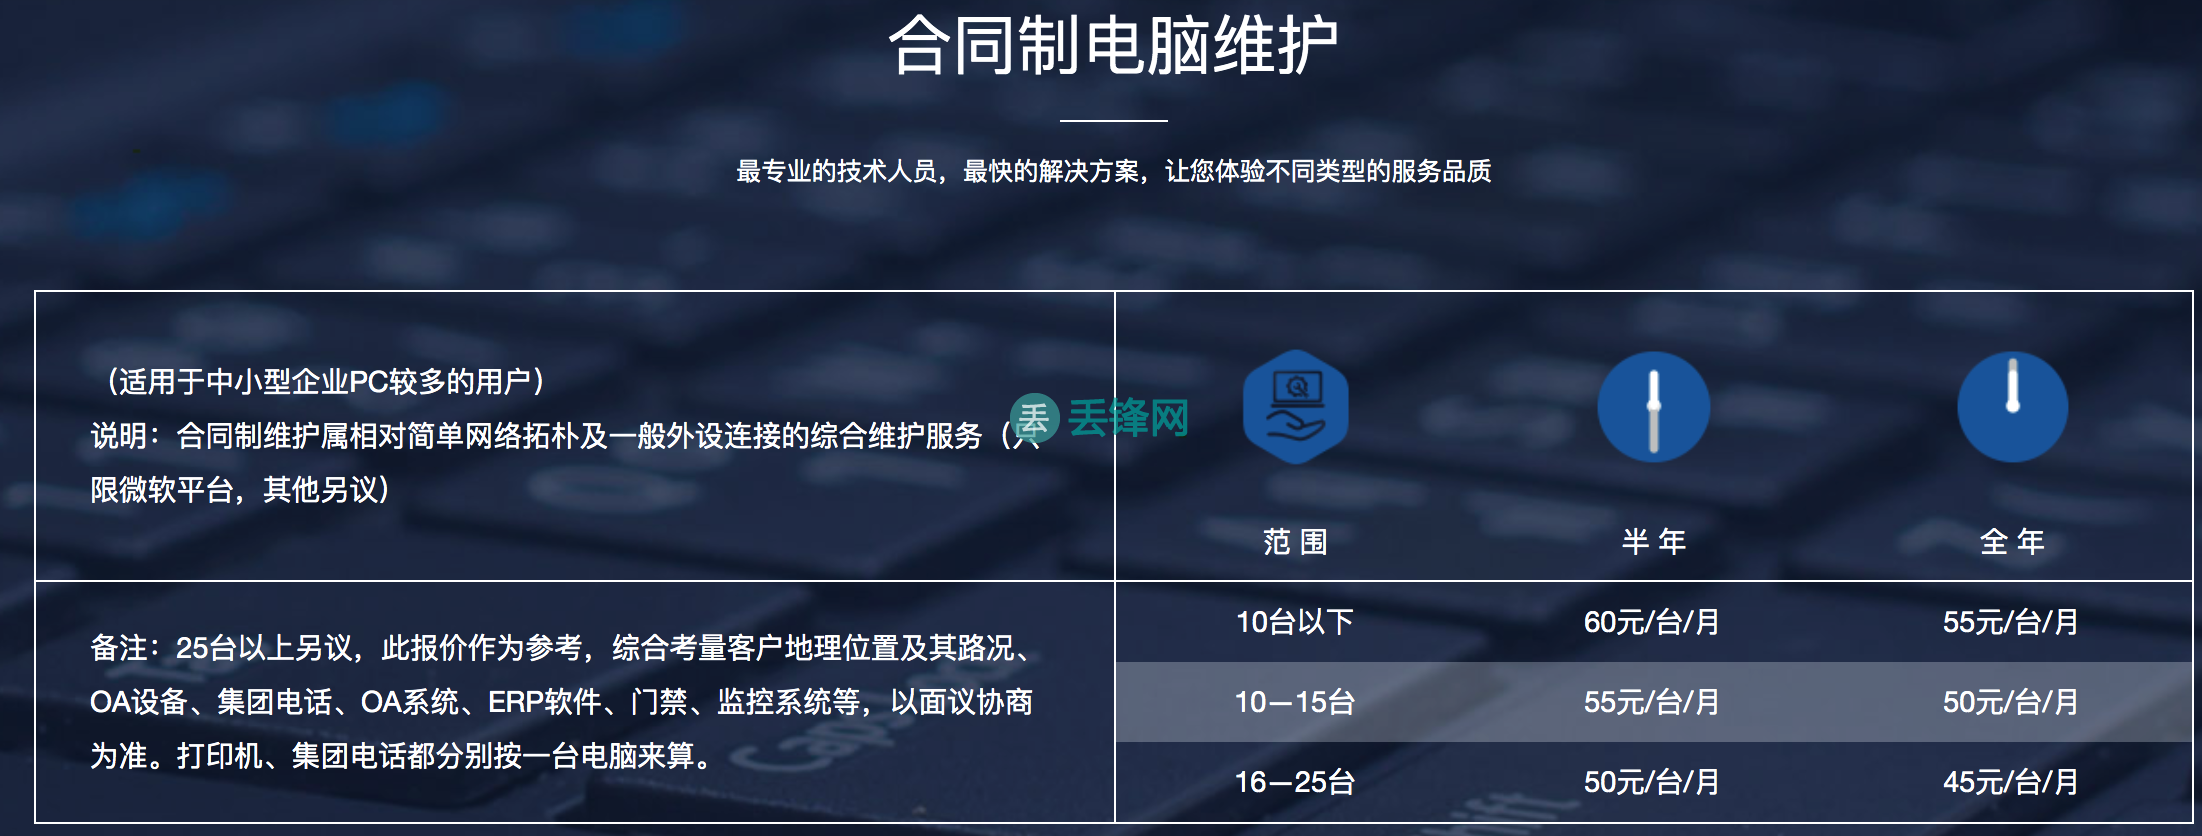 3、上海电脑维修长期合作的报价参考